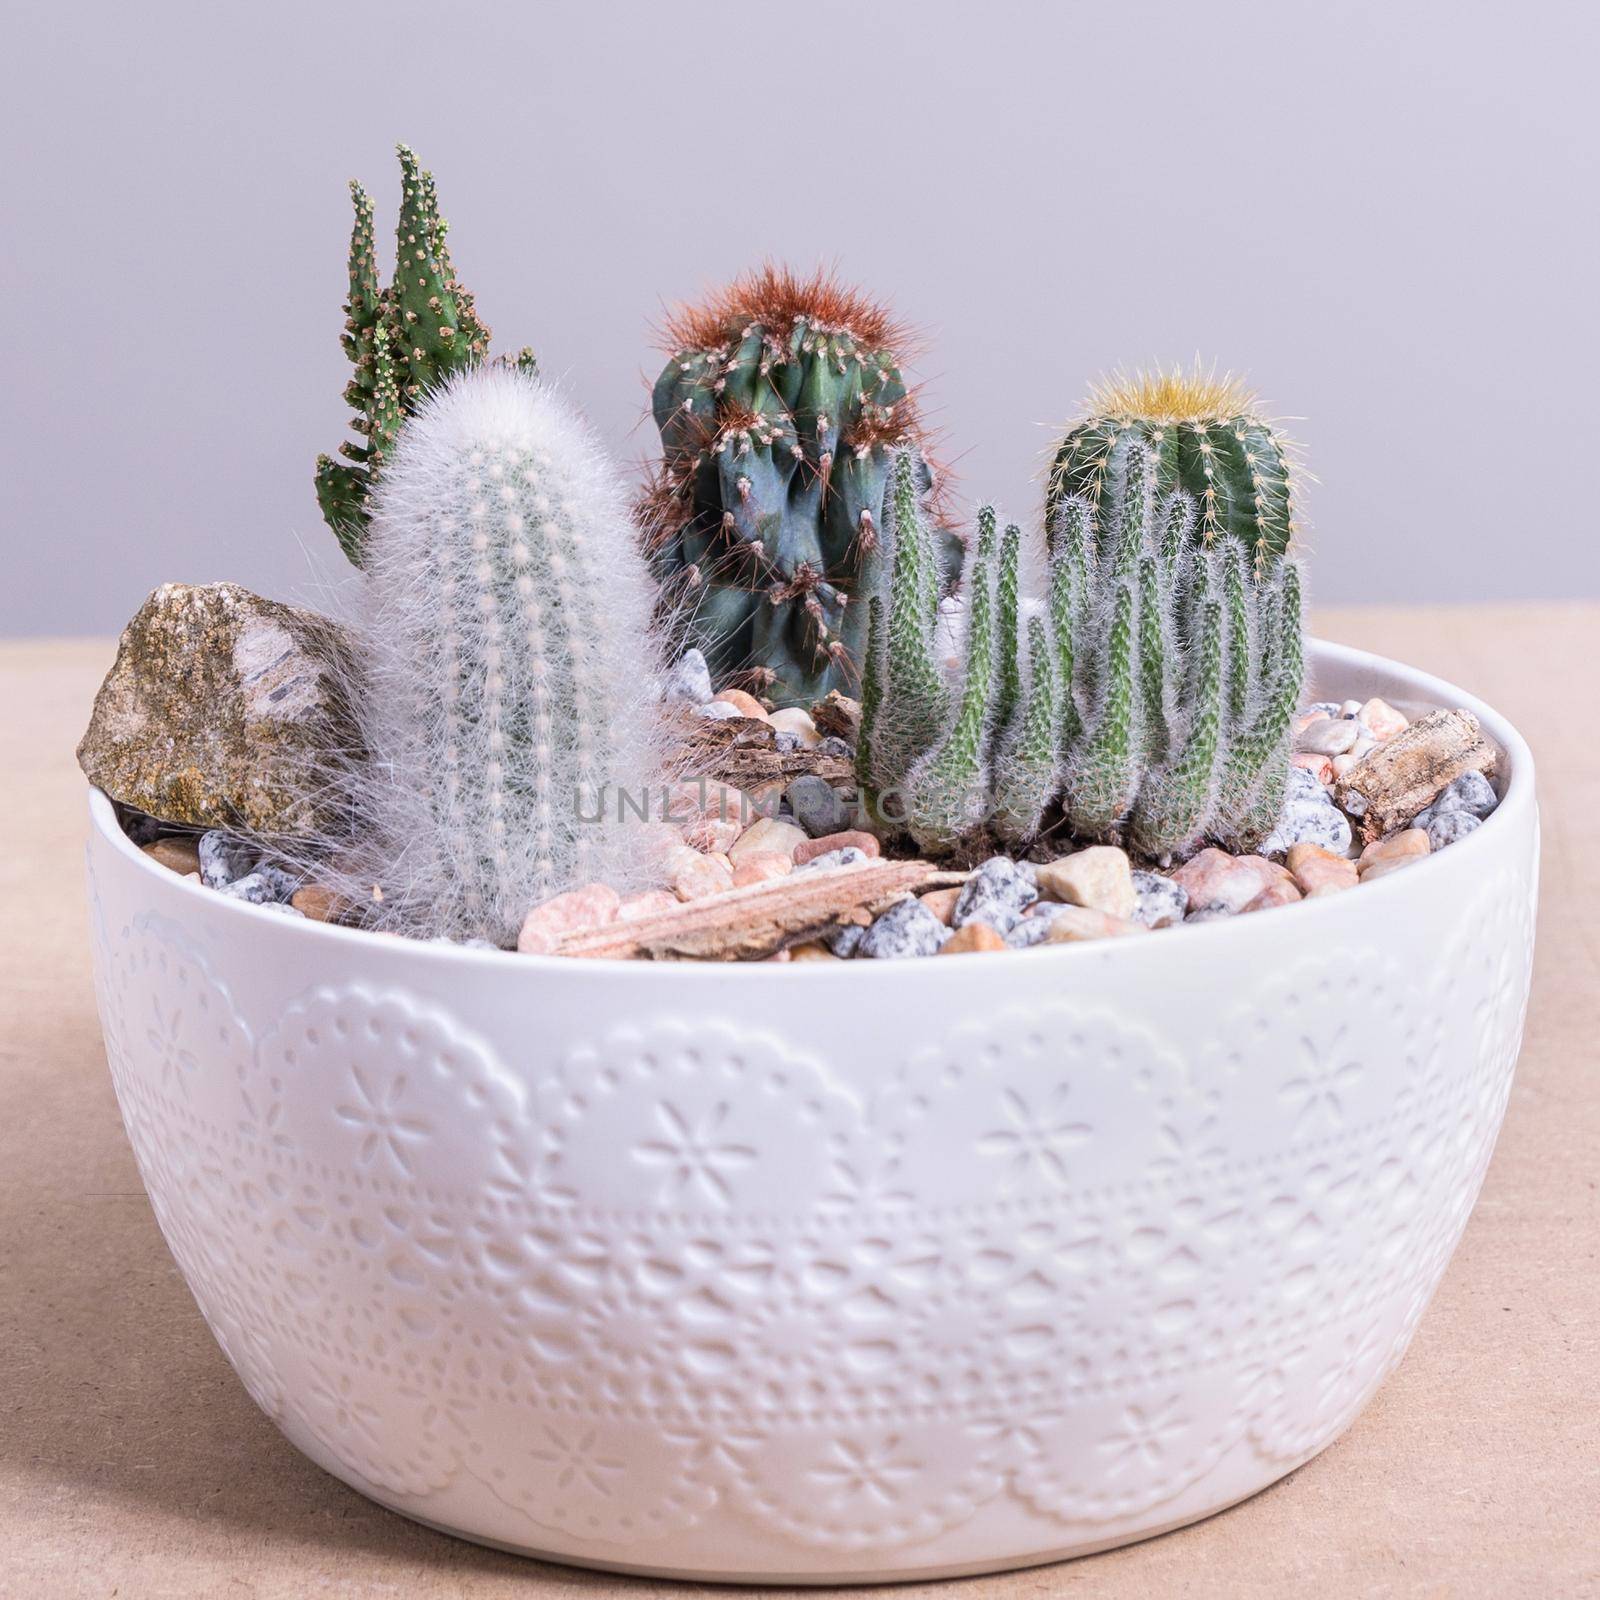 Terrarium, sand, rock, succulent, cactus in the white pot